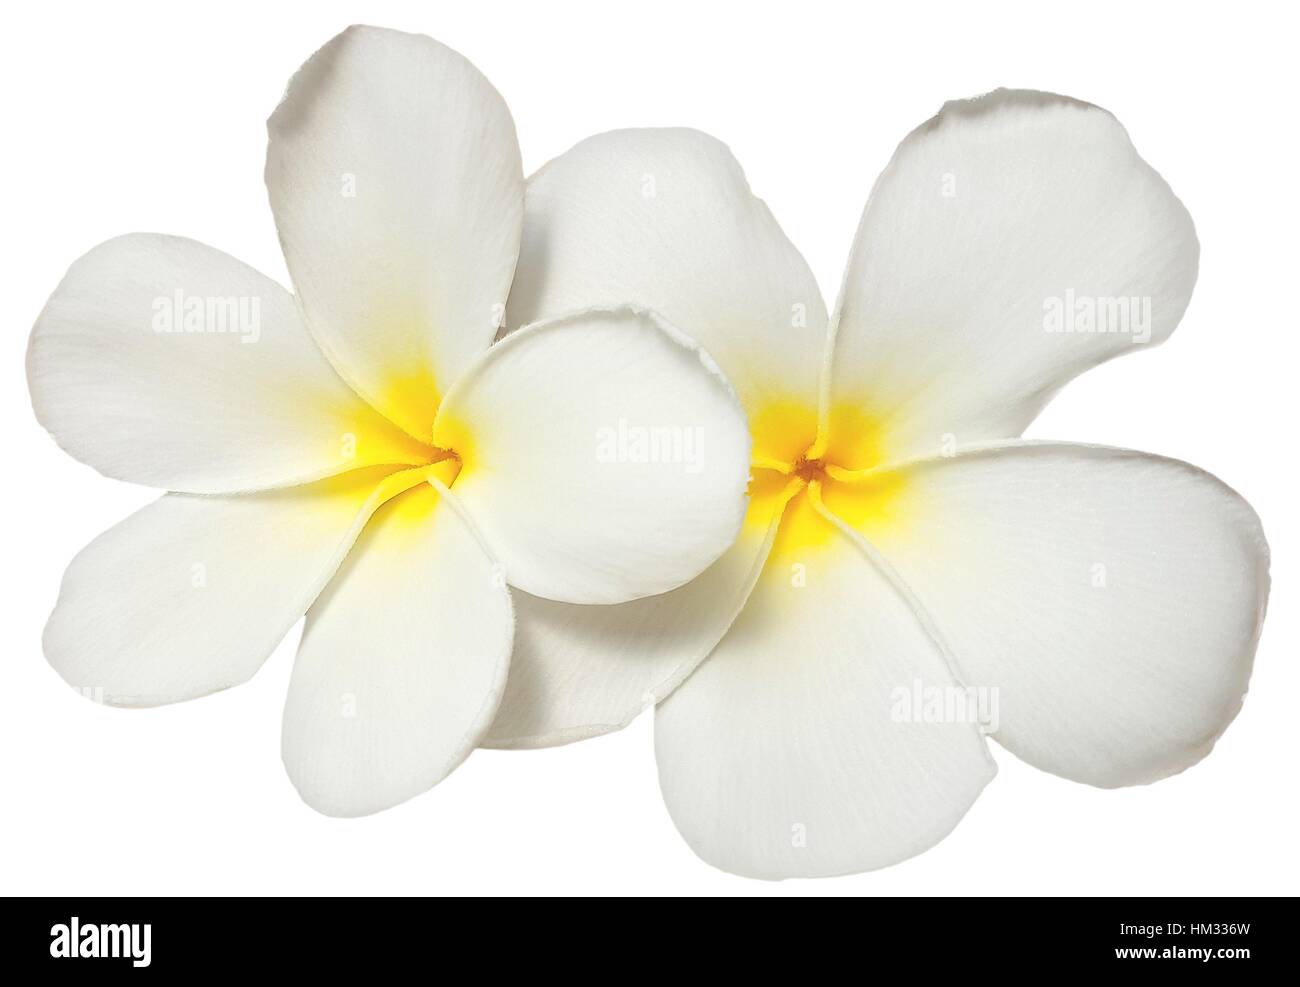 White yellow plumeria flower isolated on white background Stock Photo